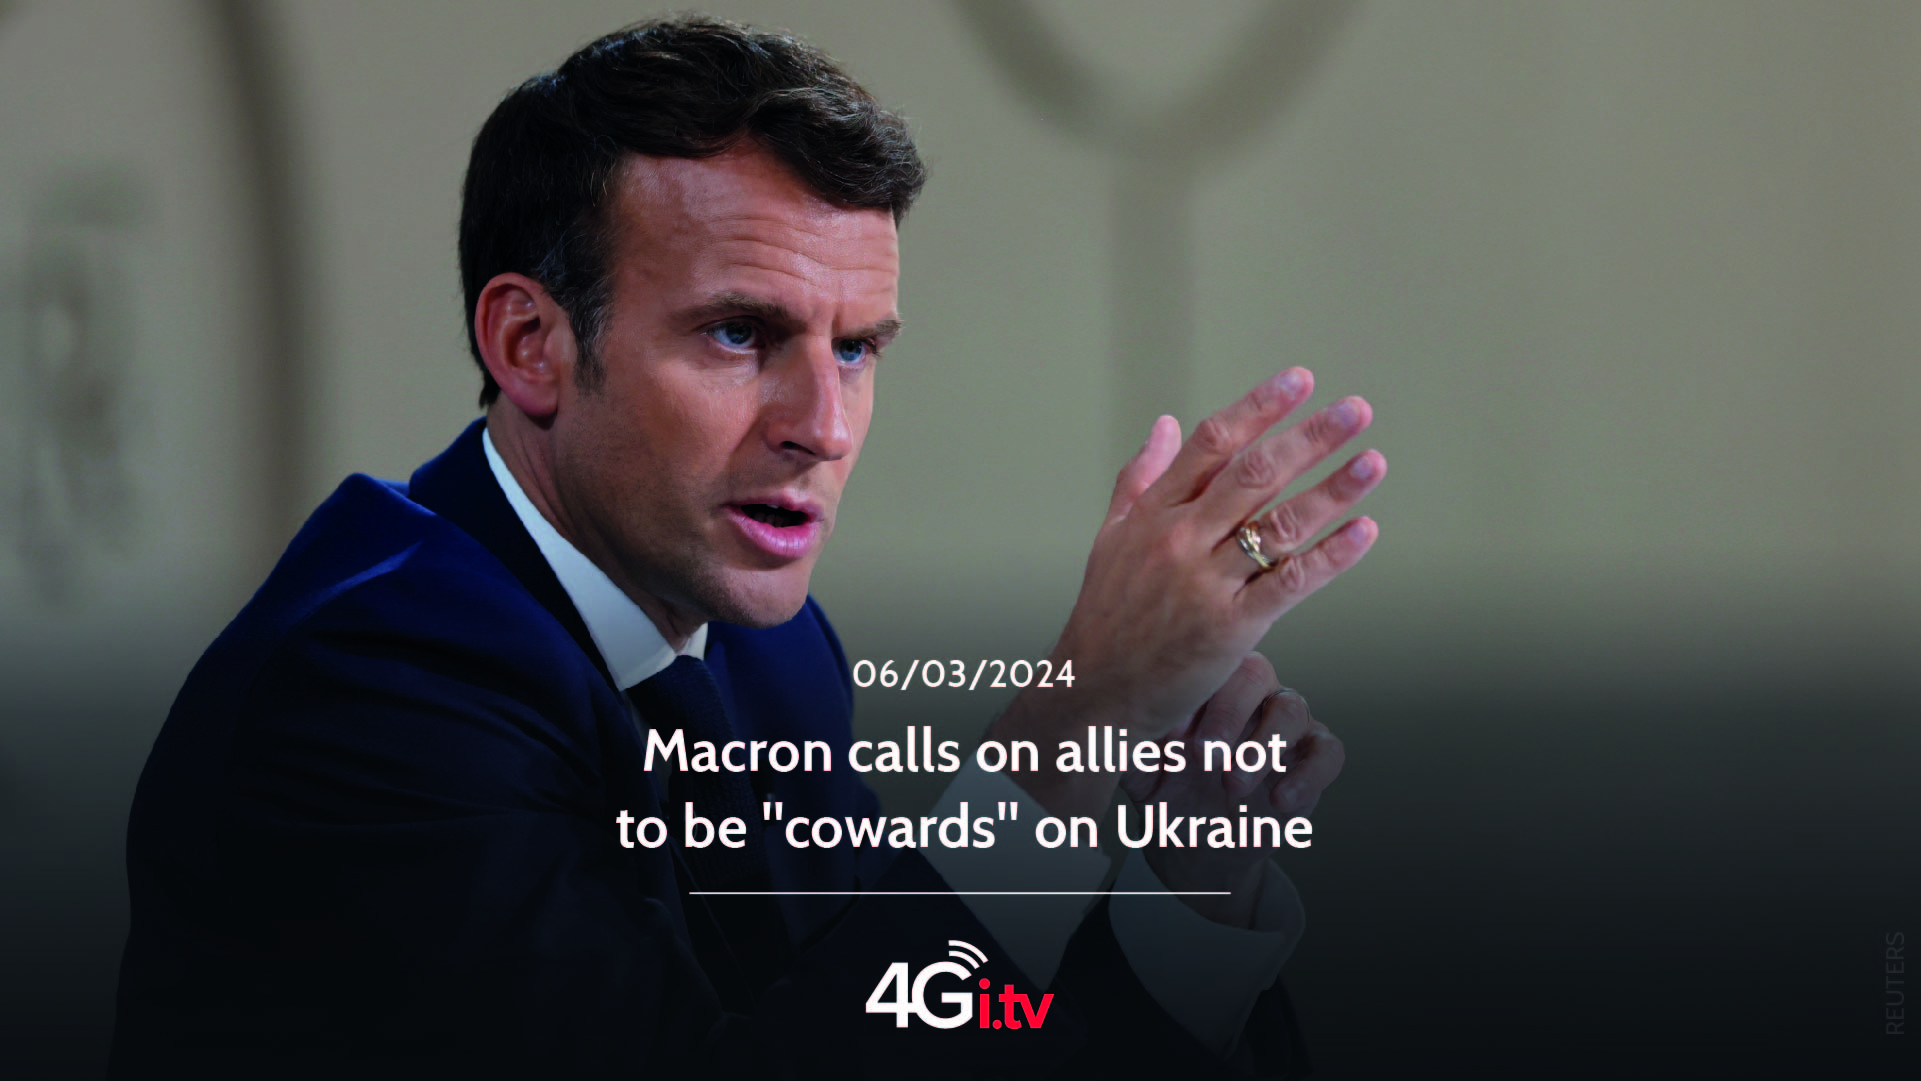 Подробнее о статье Macron calls on allies not to be “cowards” on Ukraine